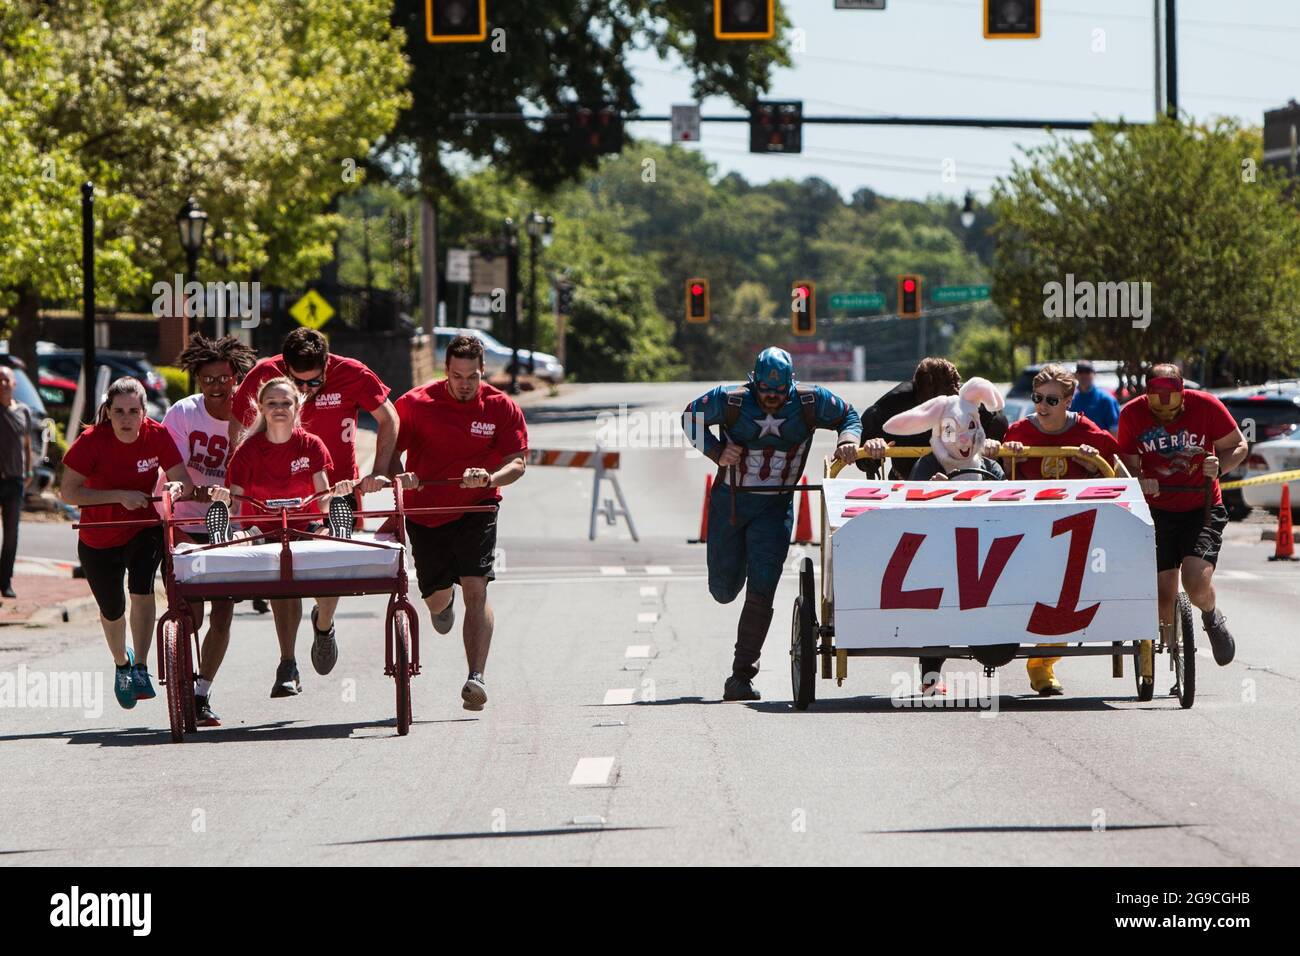 Lawrenceville, GA, EE.UU. - 27 de abril de 2019: Dos equipos empujan camas caseras sobre ruedas por una calle en un evento de carrera de cama para beneficiar a la caridad. Foto de stock